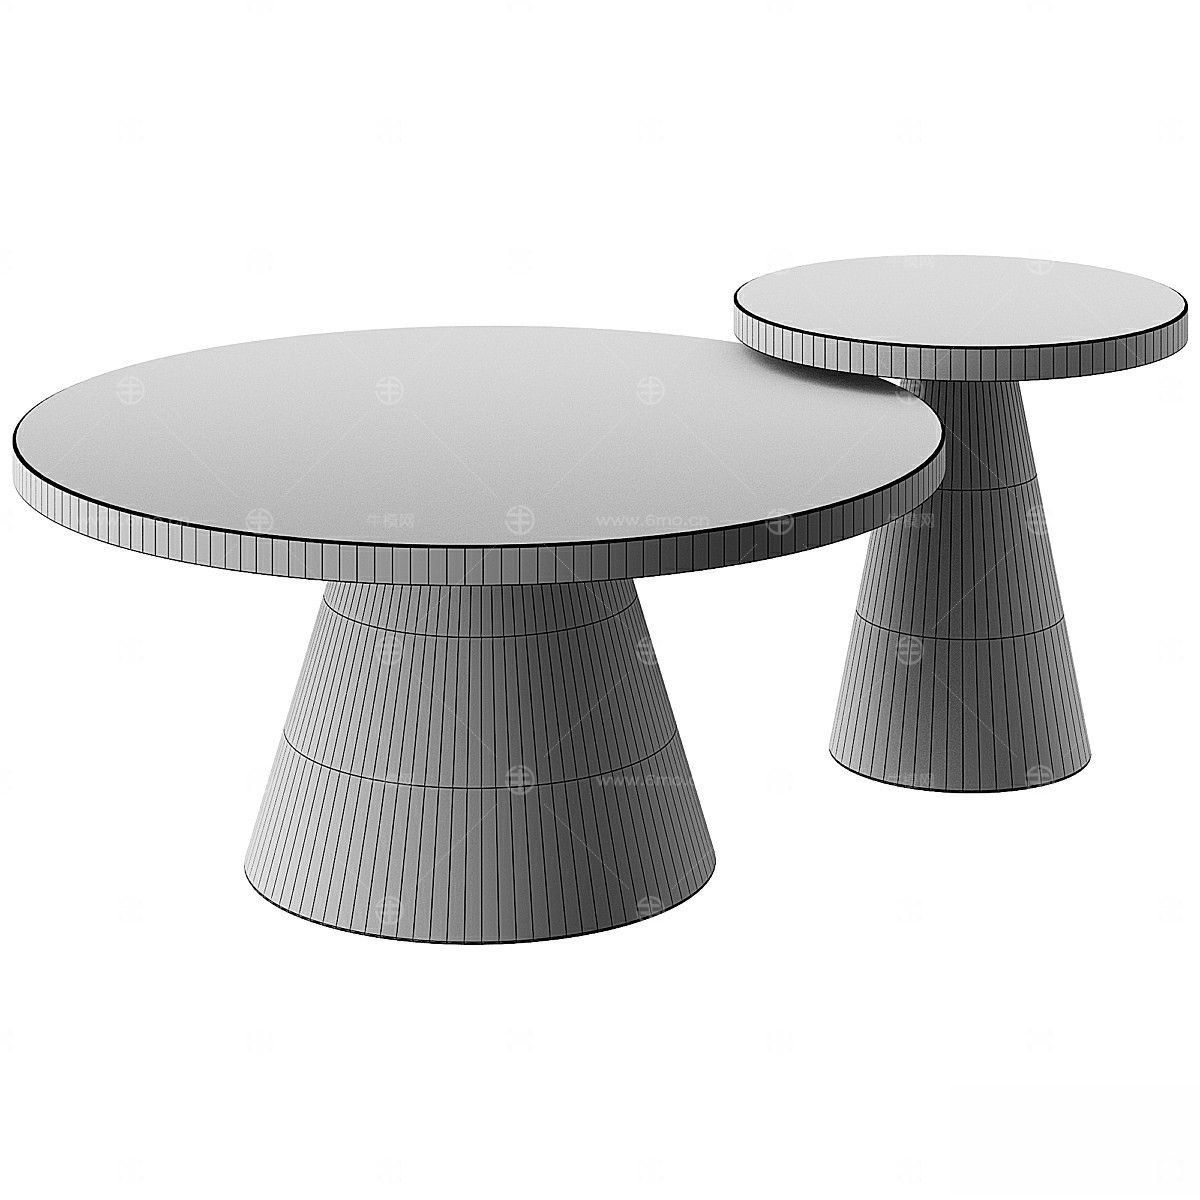 利兹圆形咖啡桌 - 黑色陶瓷咖啡桌和边桌